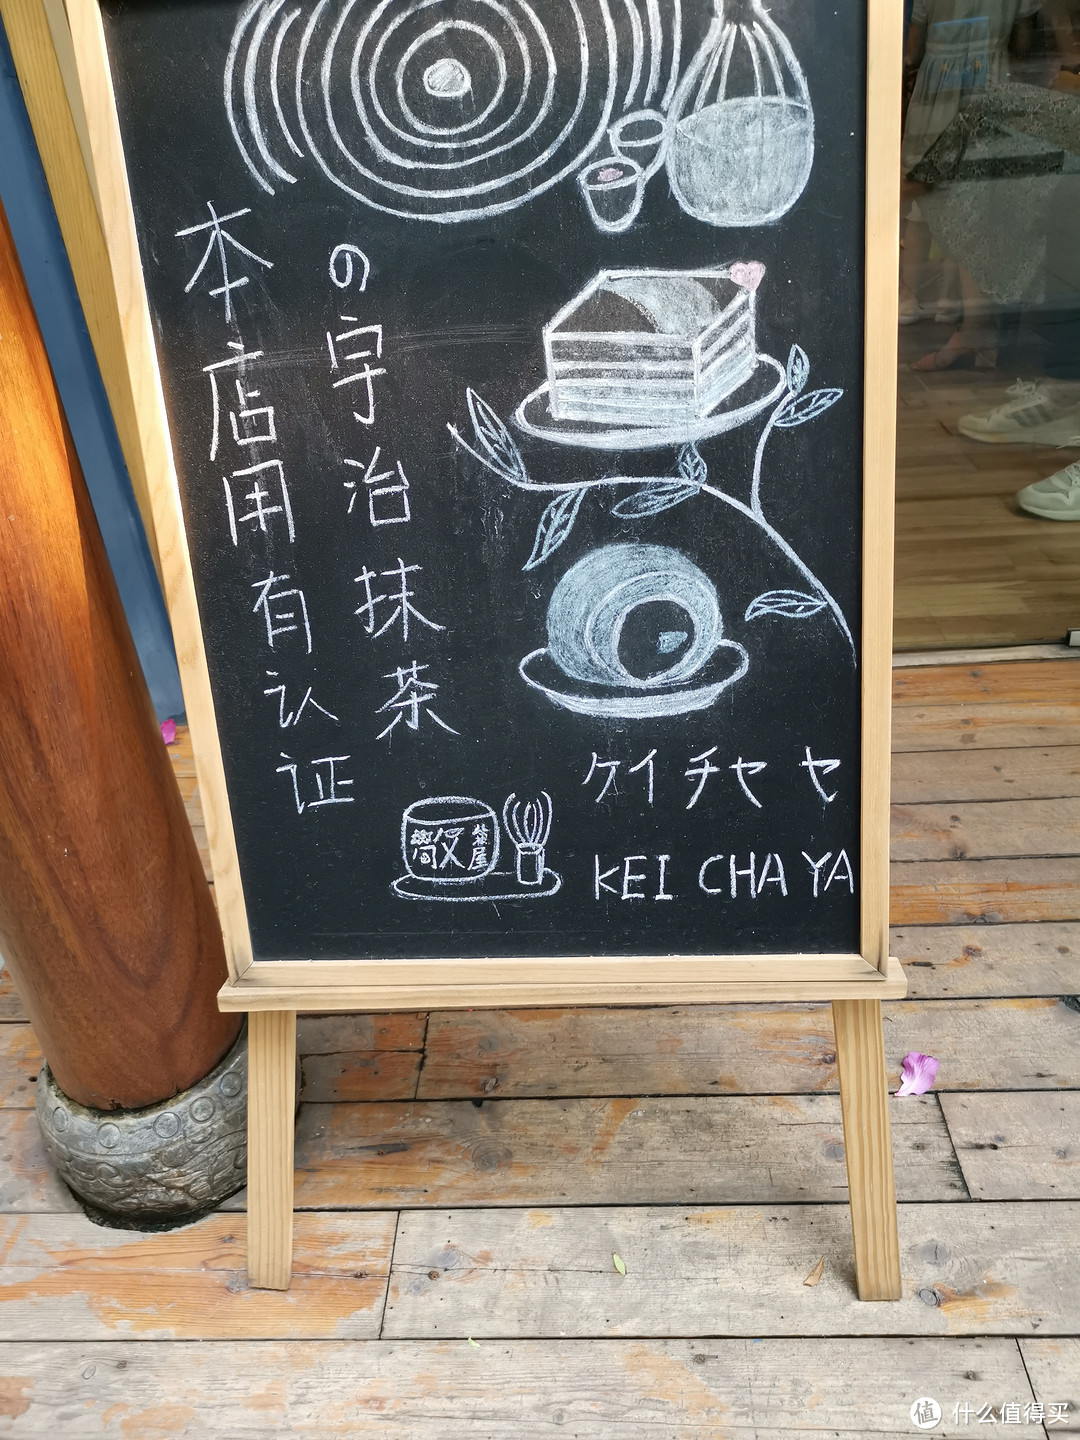 一家颜值在线带点小清新的甜品店——广州天河区“敬茶屋 keichaya”